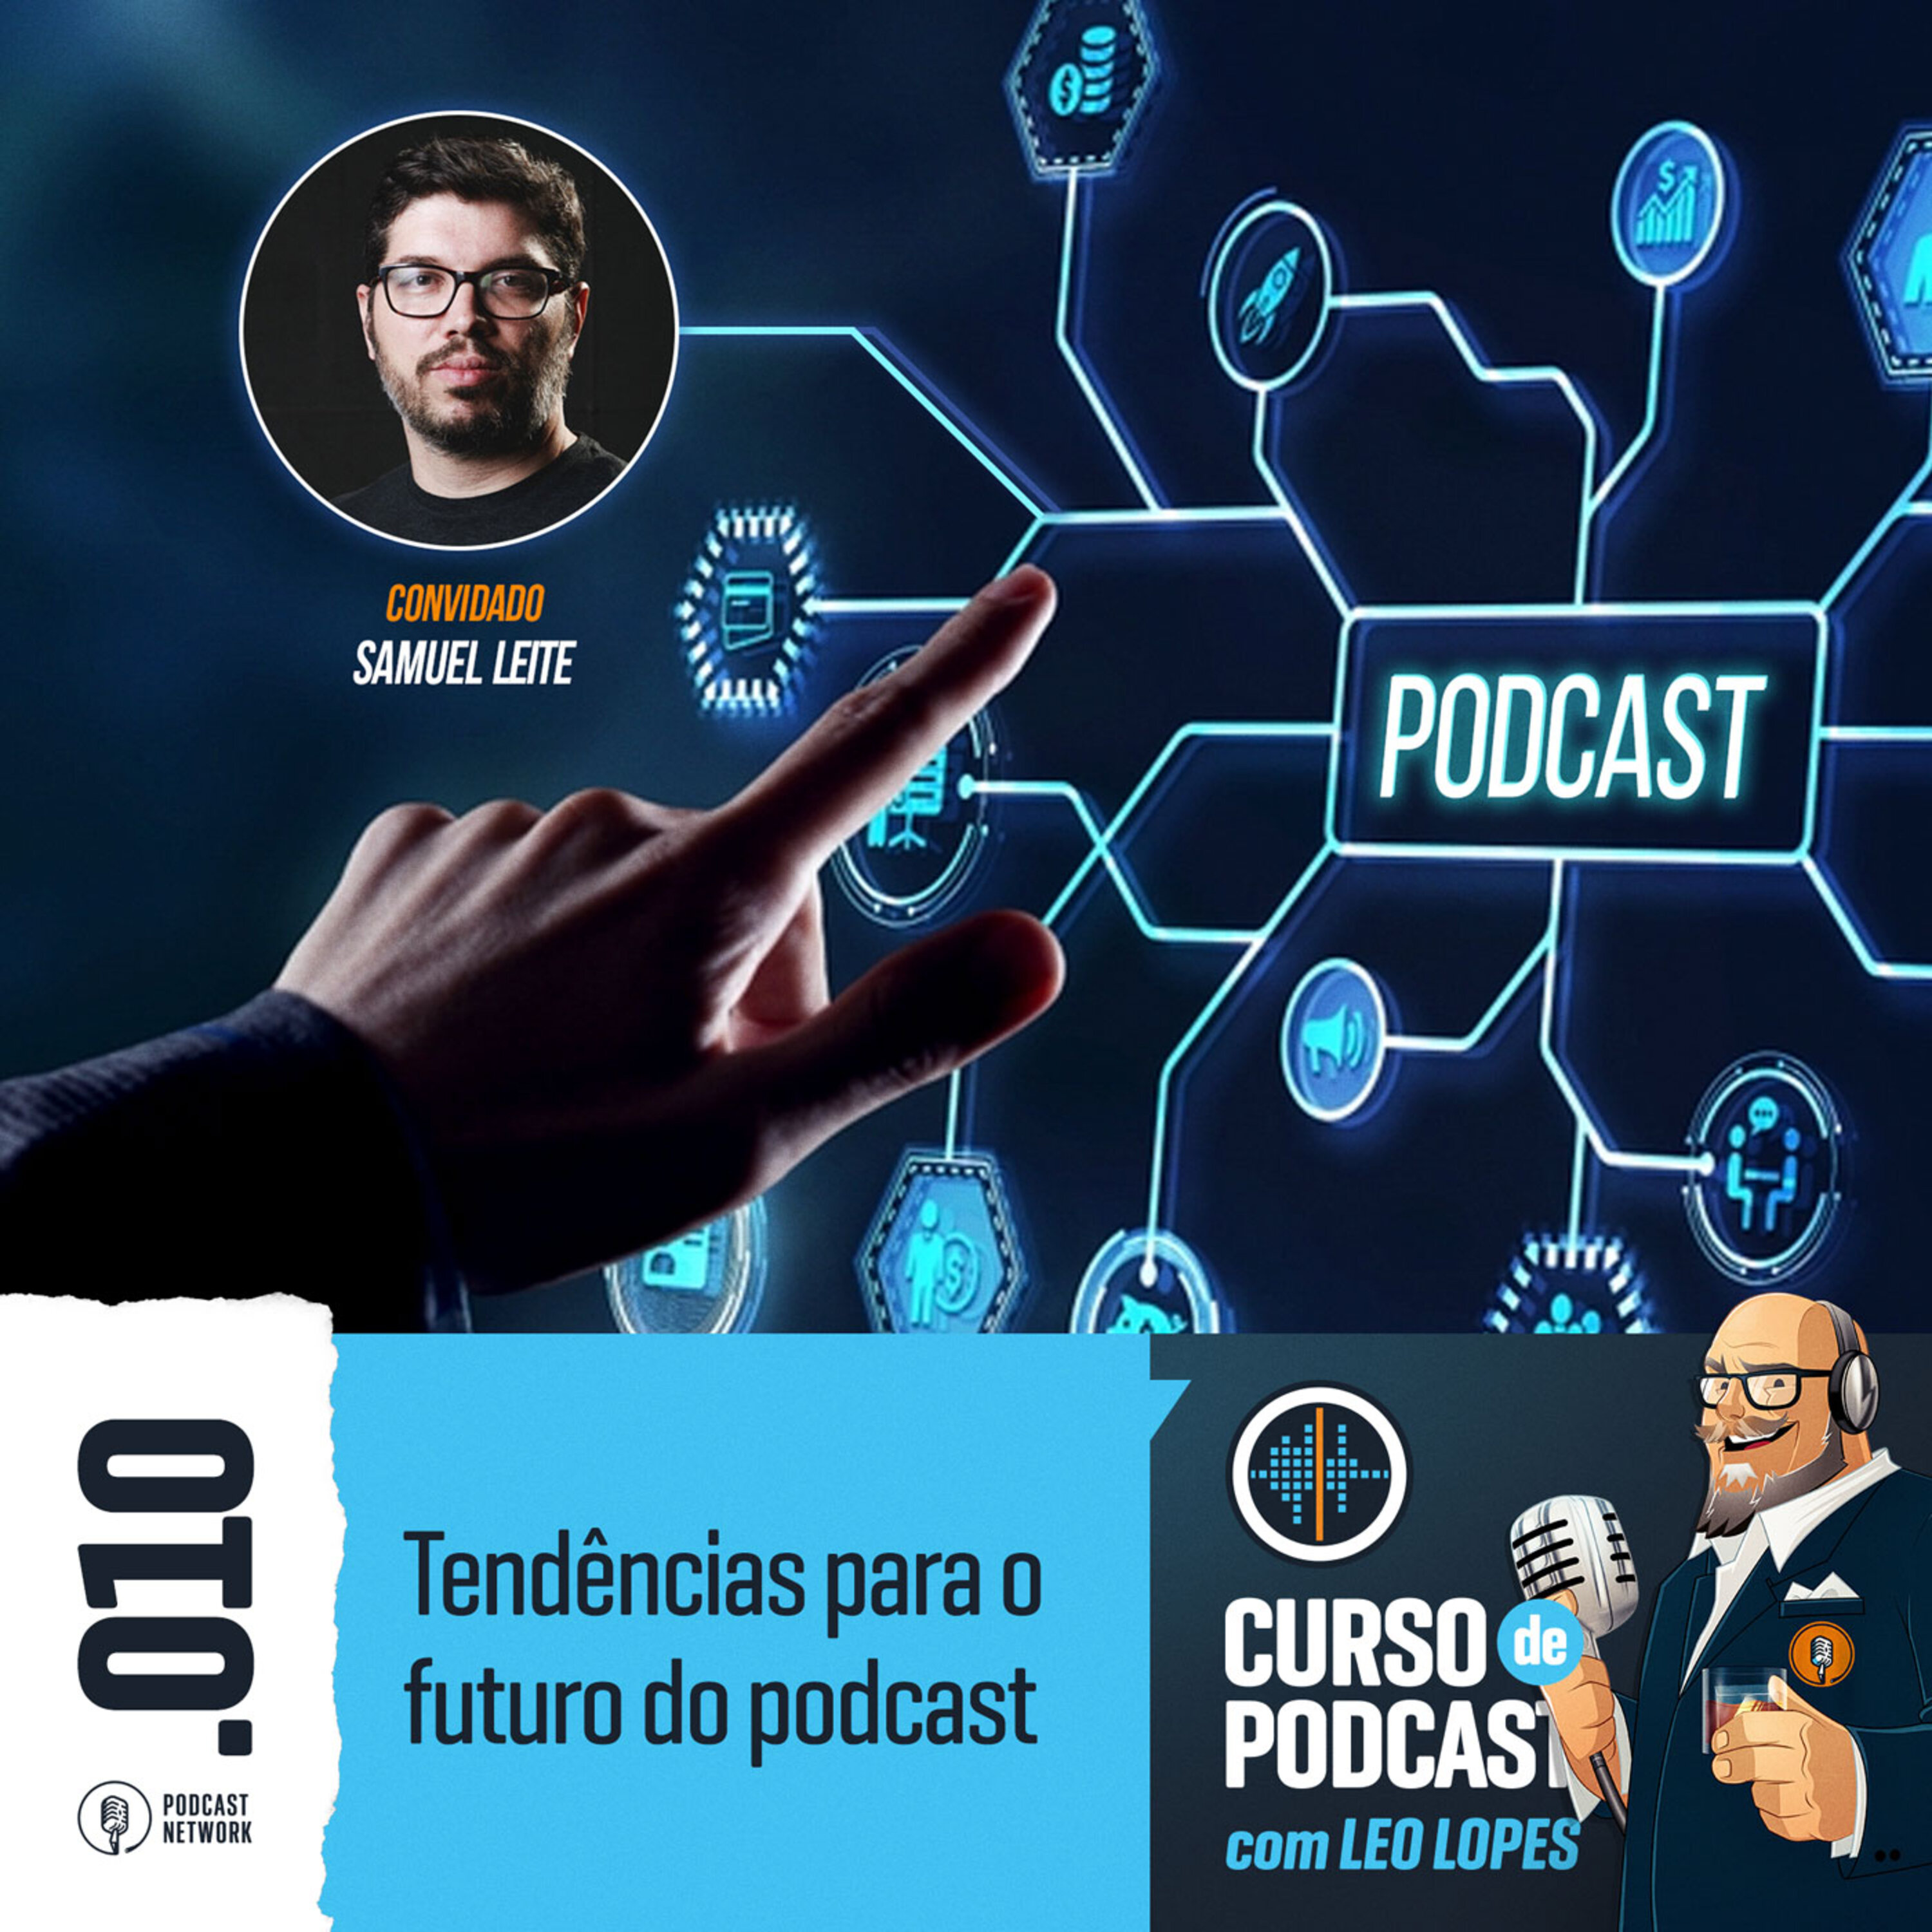 Curso de Podcast #010 - Tendências para o futuro do podcast, com Samuel Leite